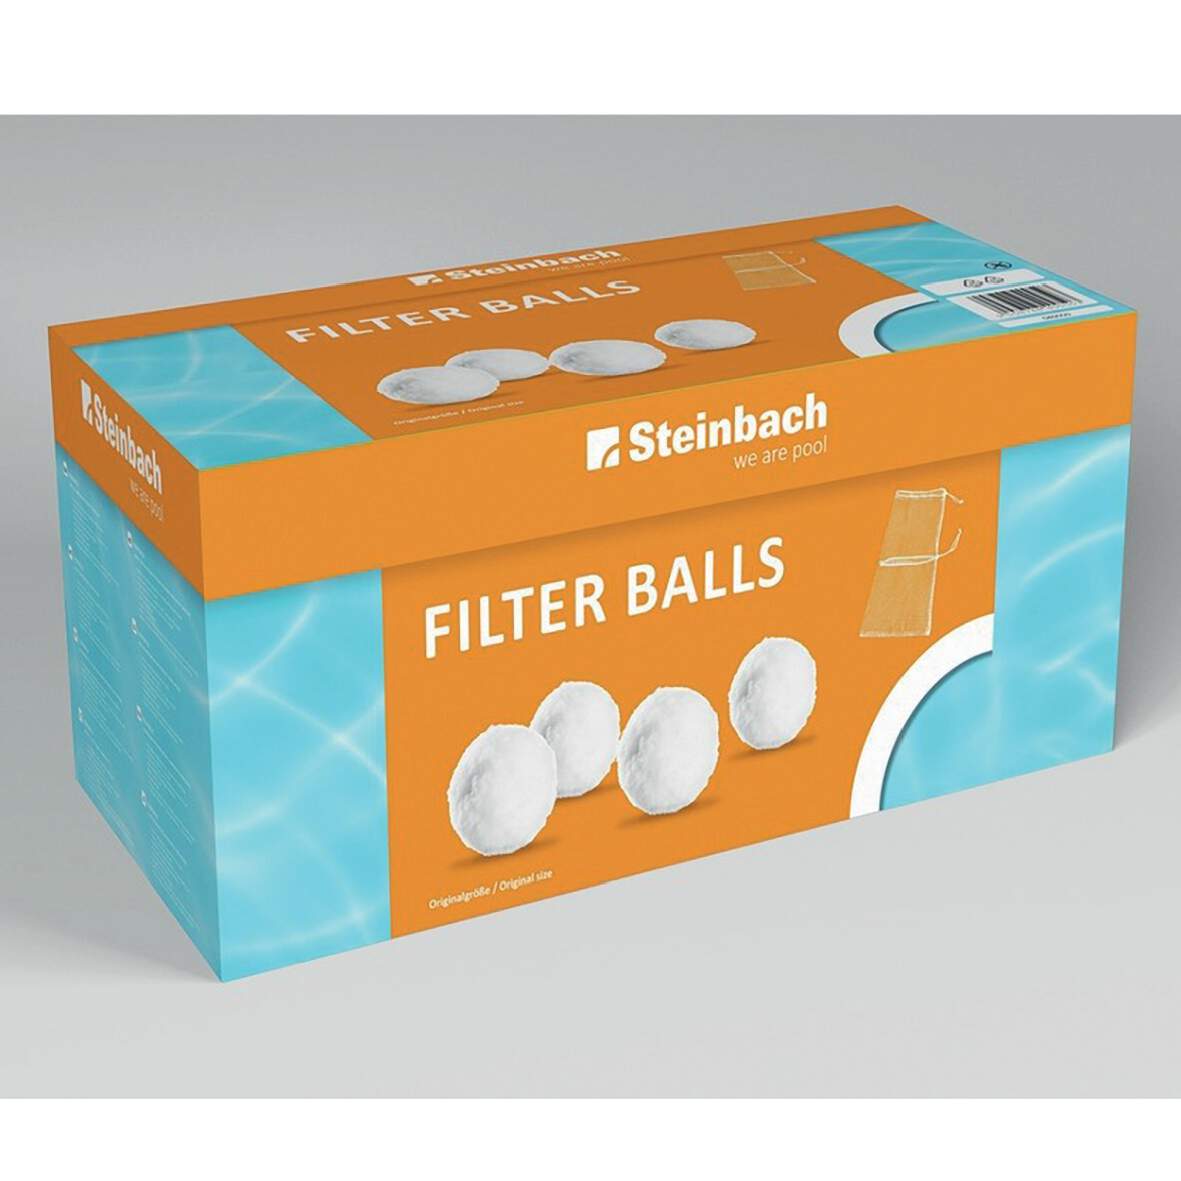 1271629 - Filterbälle Filter Balls 